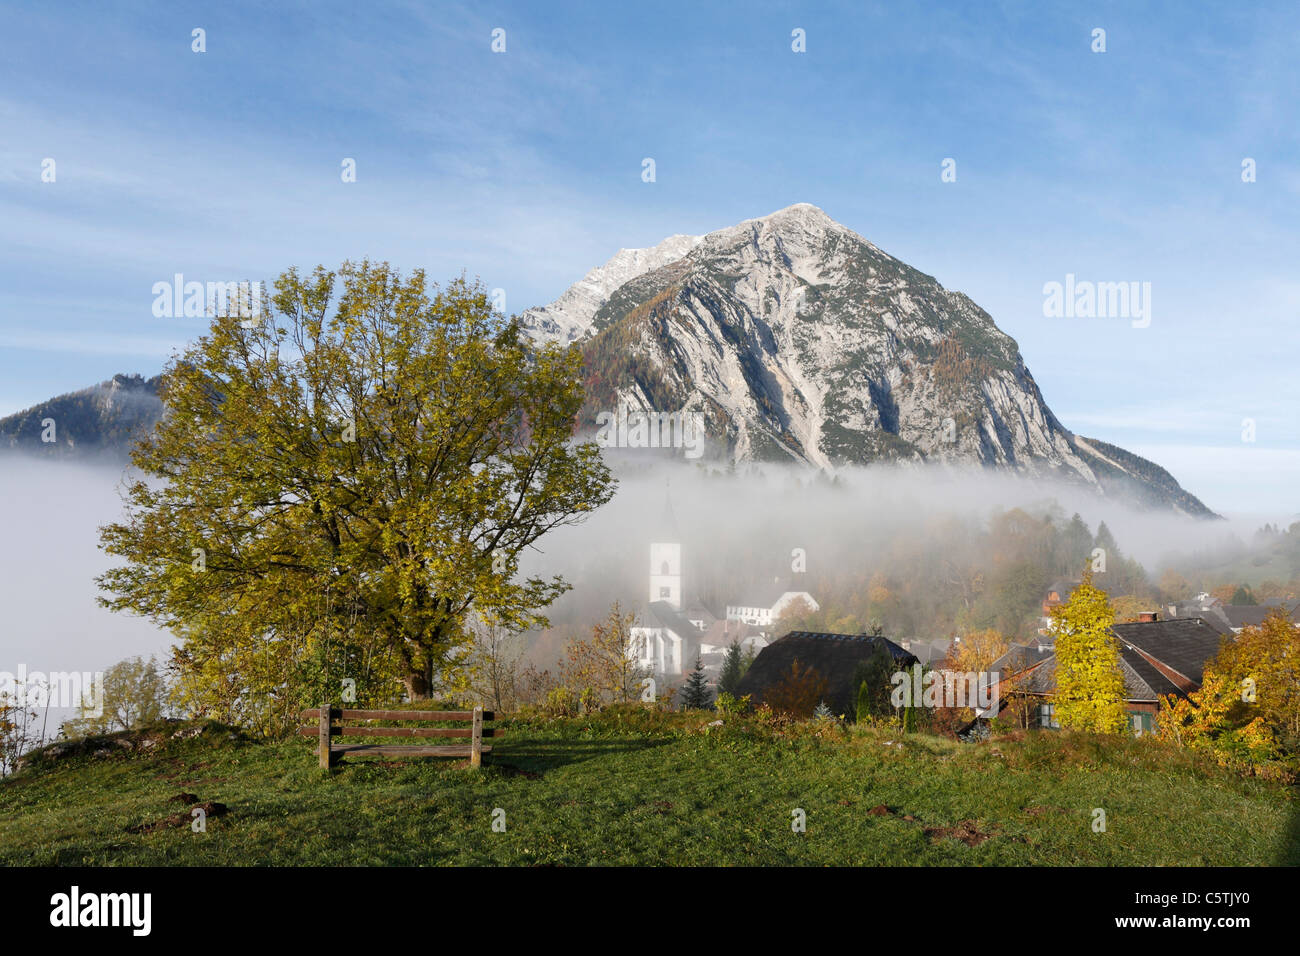 Austria, Styria, View of grimming mountain Stock Photo